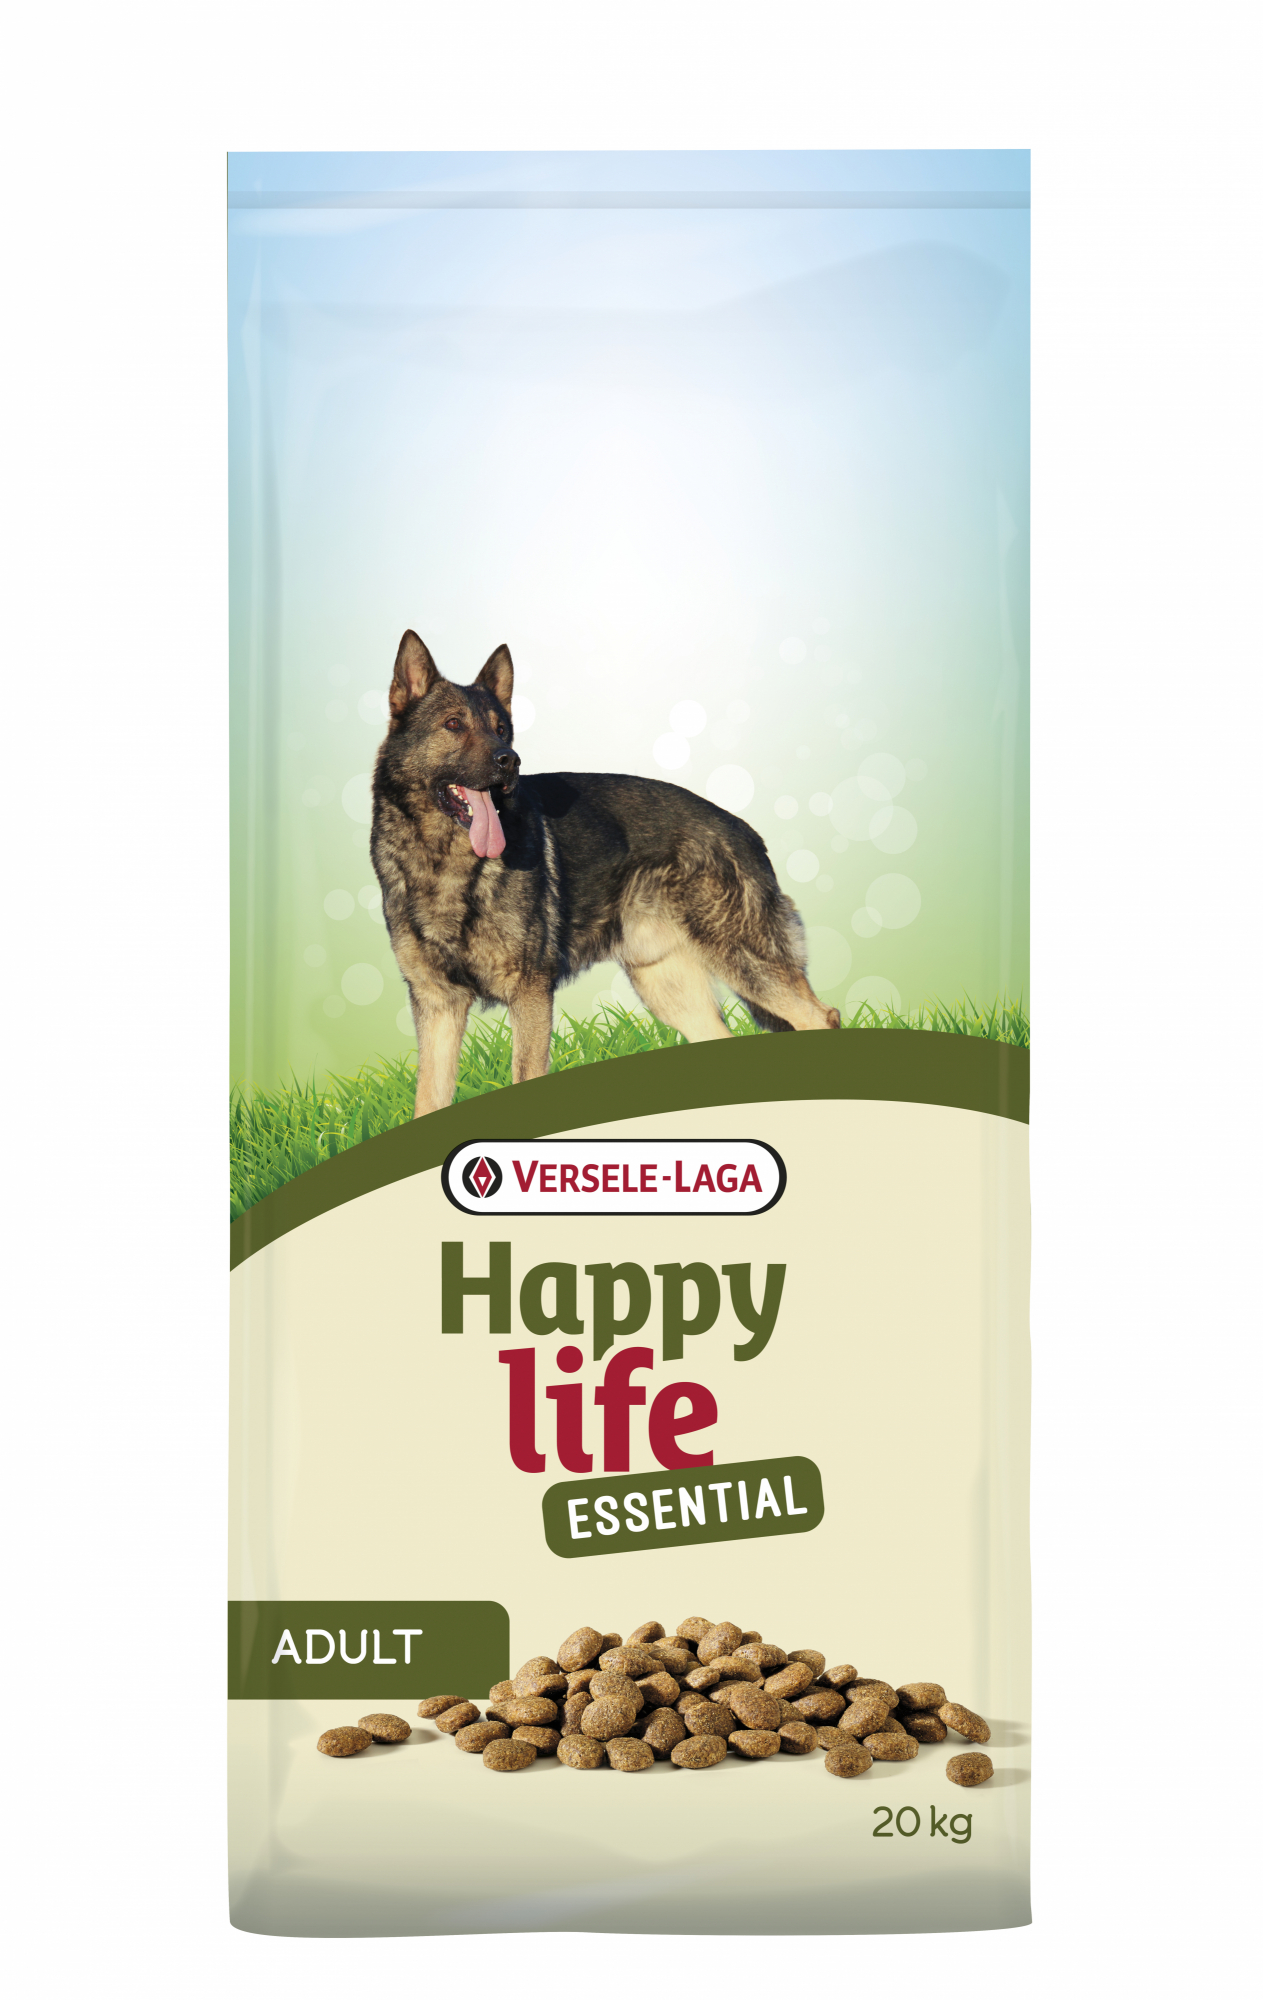 HAPPY LIFE Essential pour chien adulte